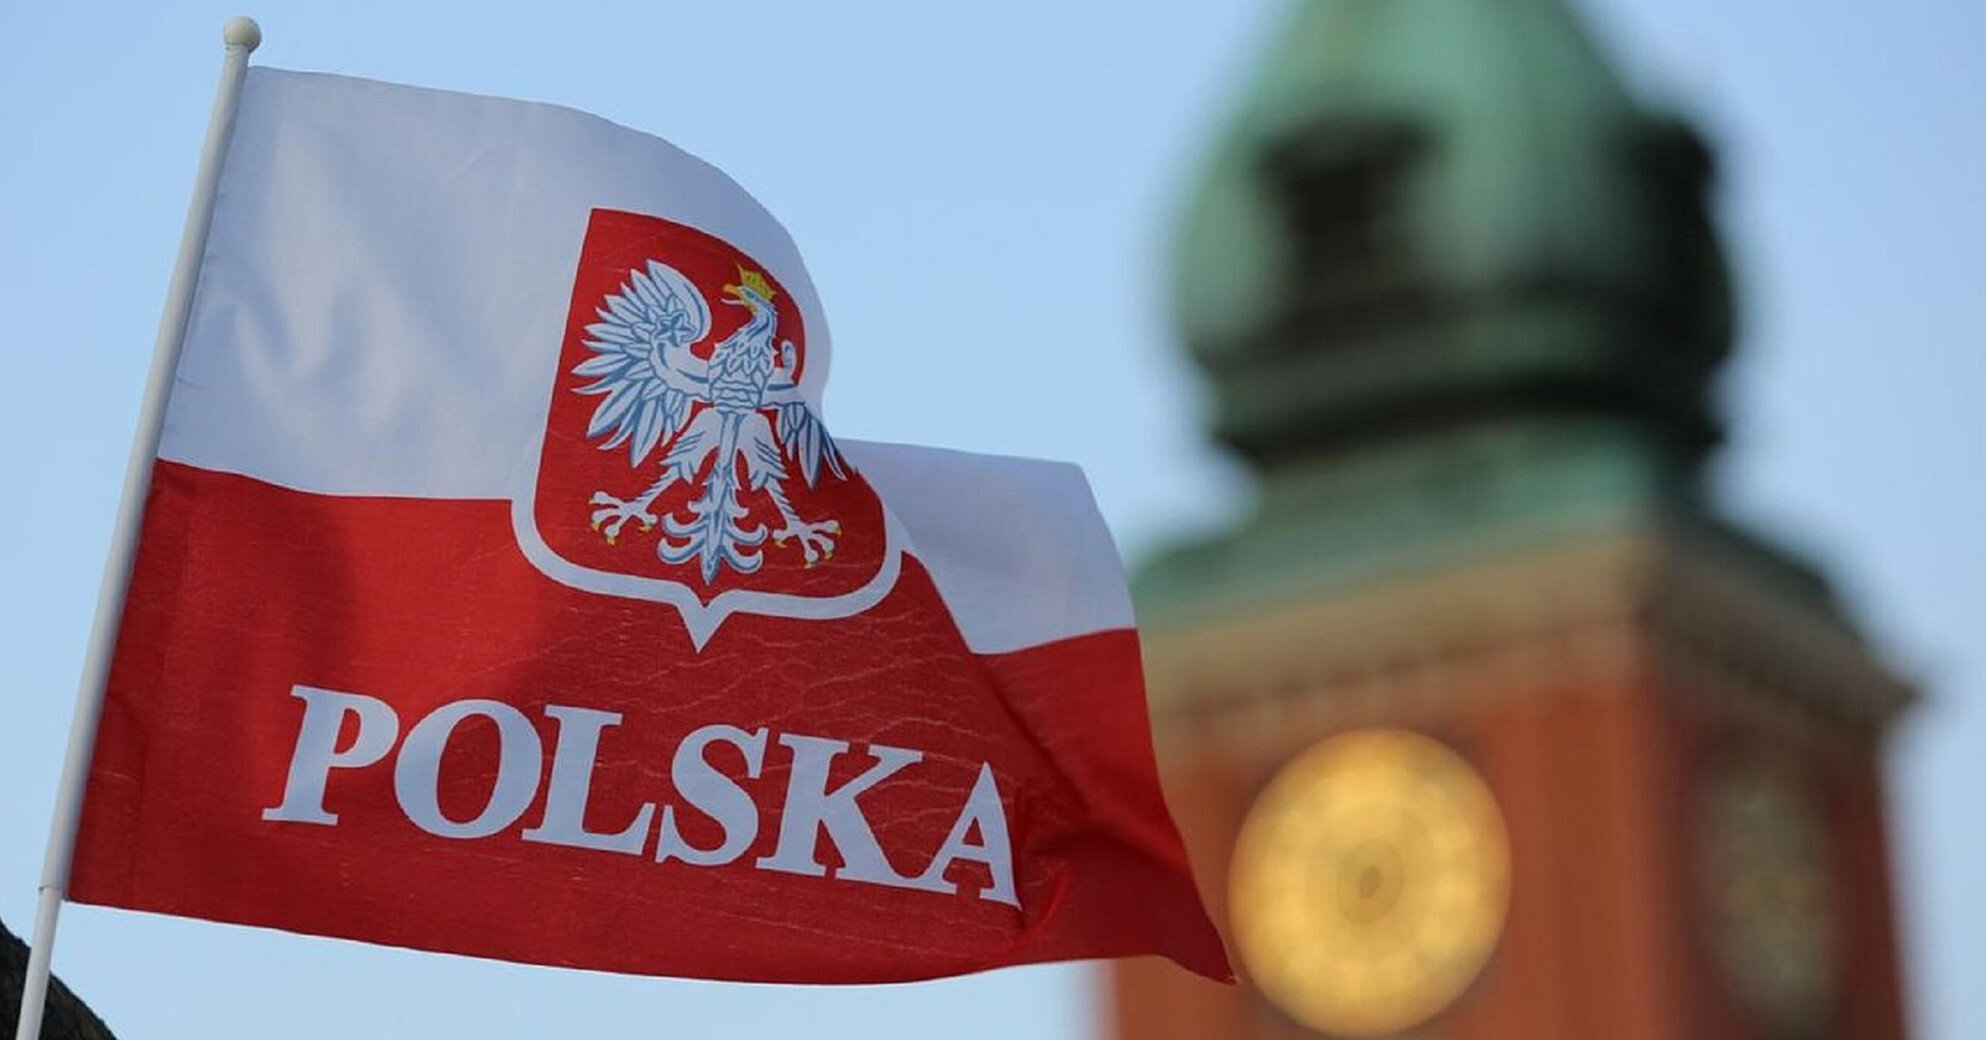 50% поляков поддерживают однополые браки – опрос